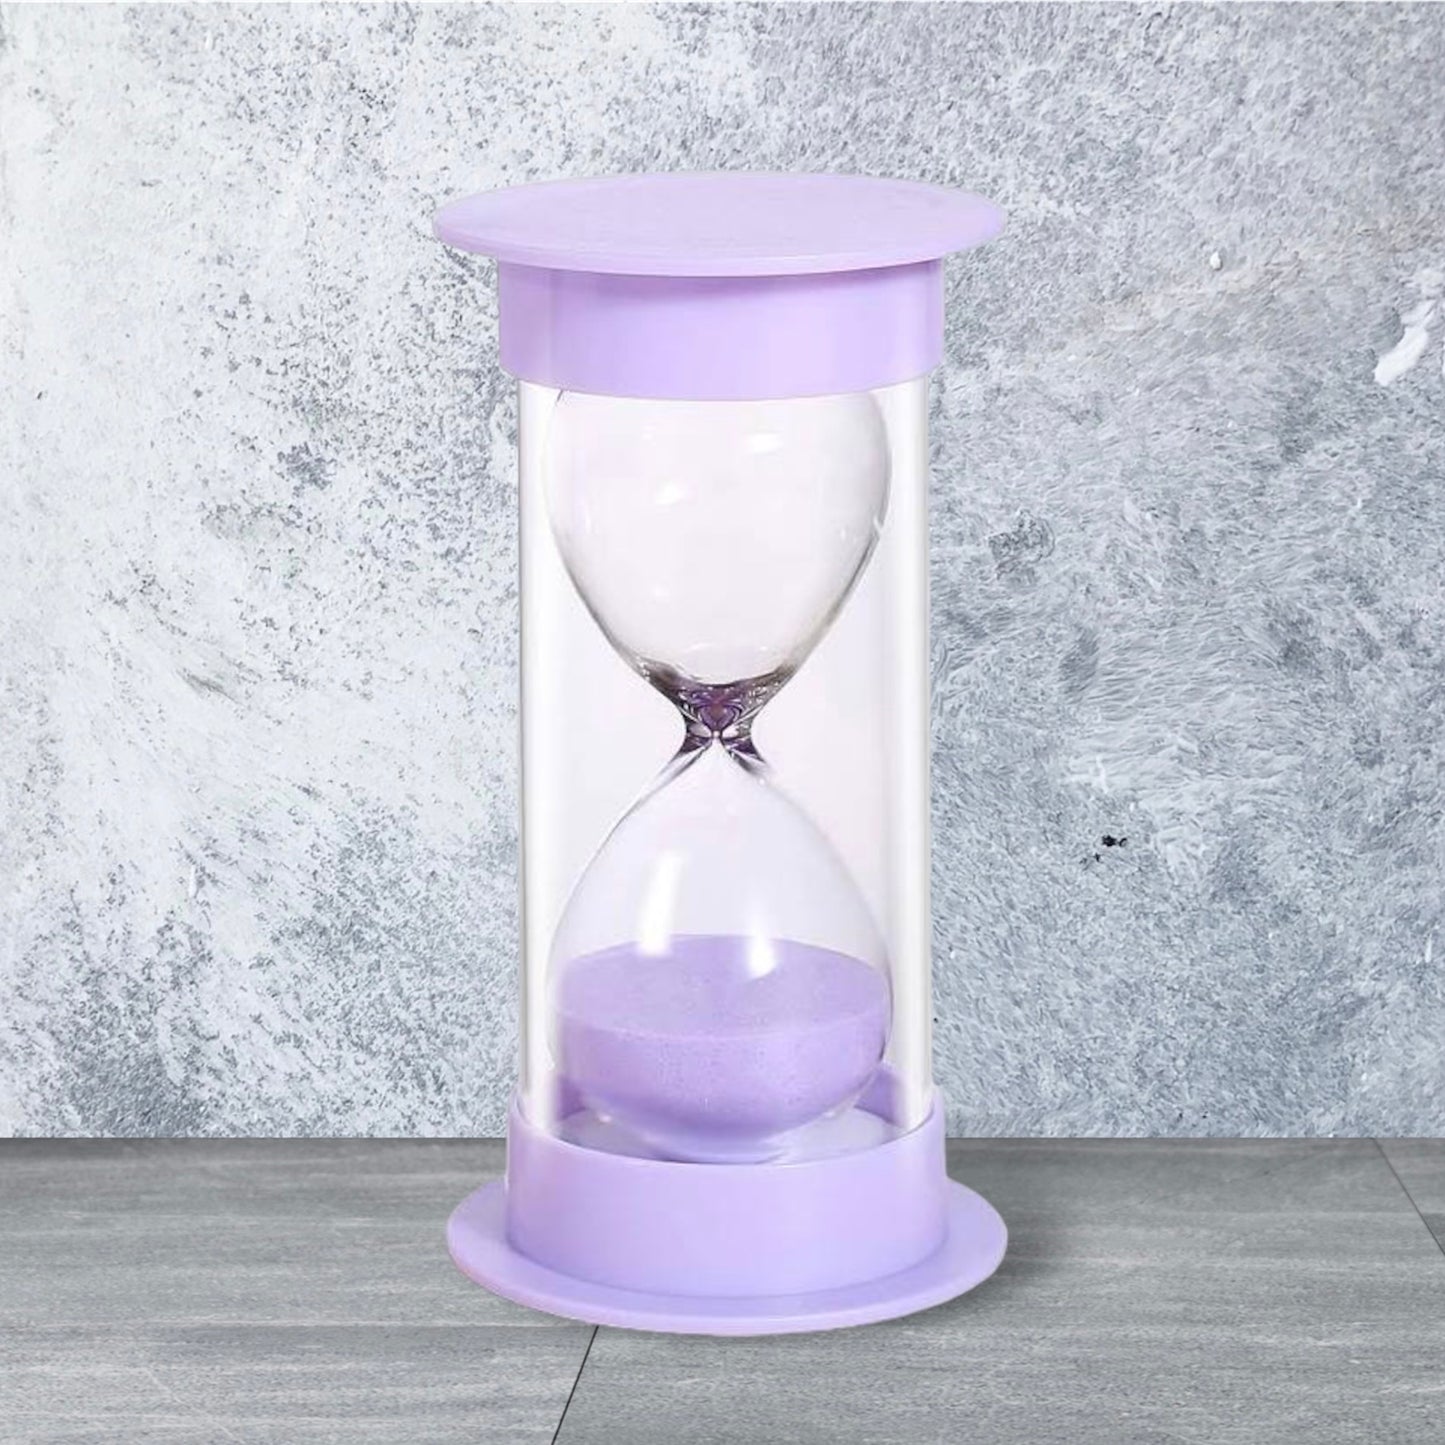 TOIRXARN 5 Minute Sand Timer Hourglass Sandglass Kitchen Timer in Purple